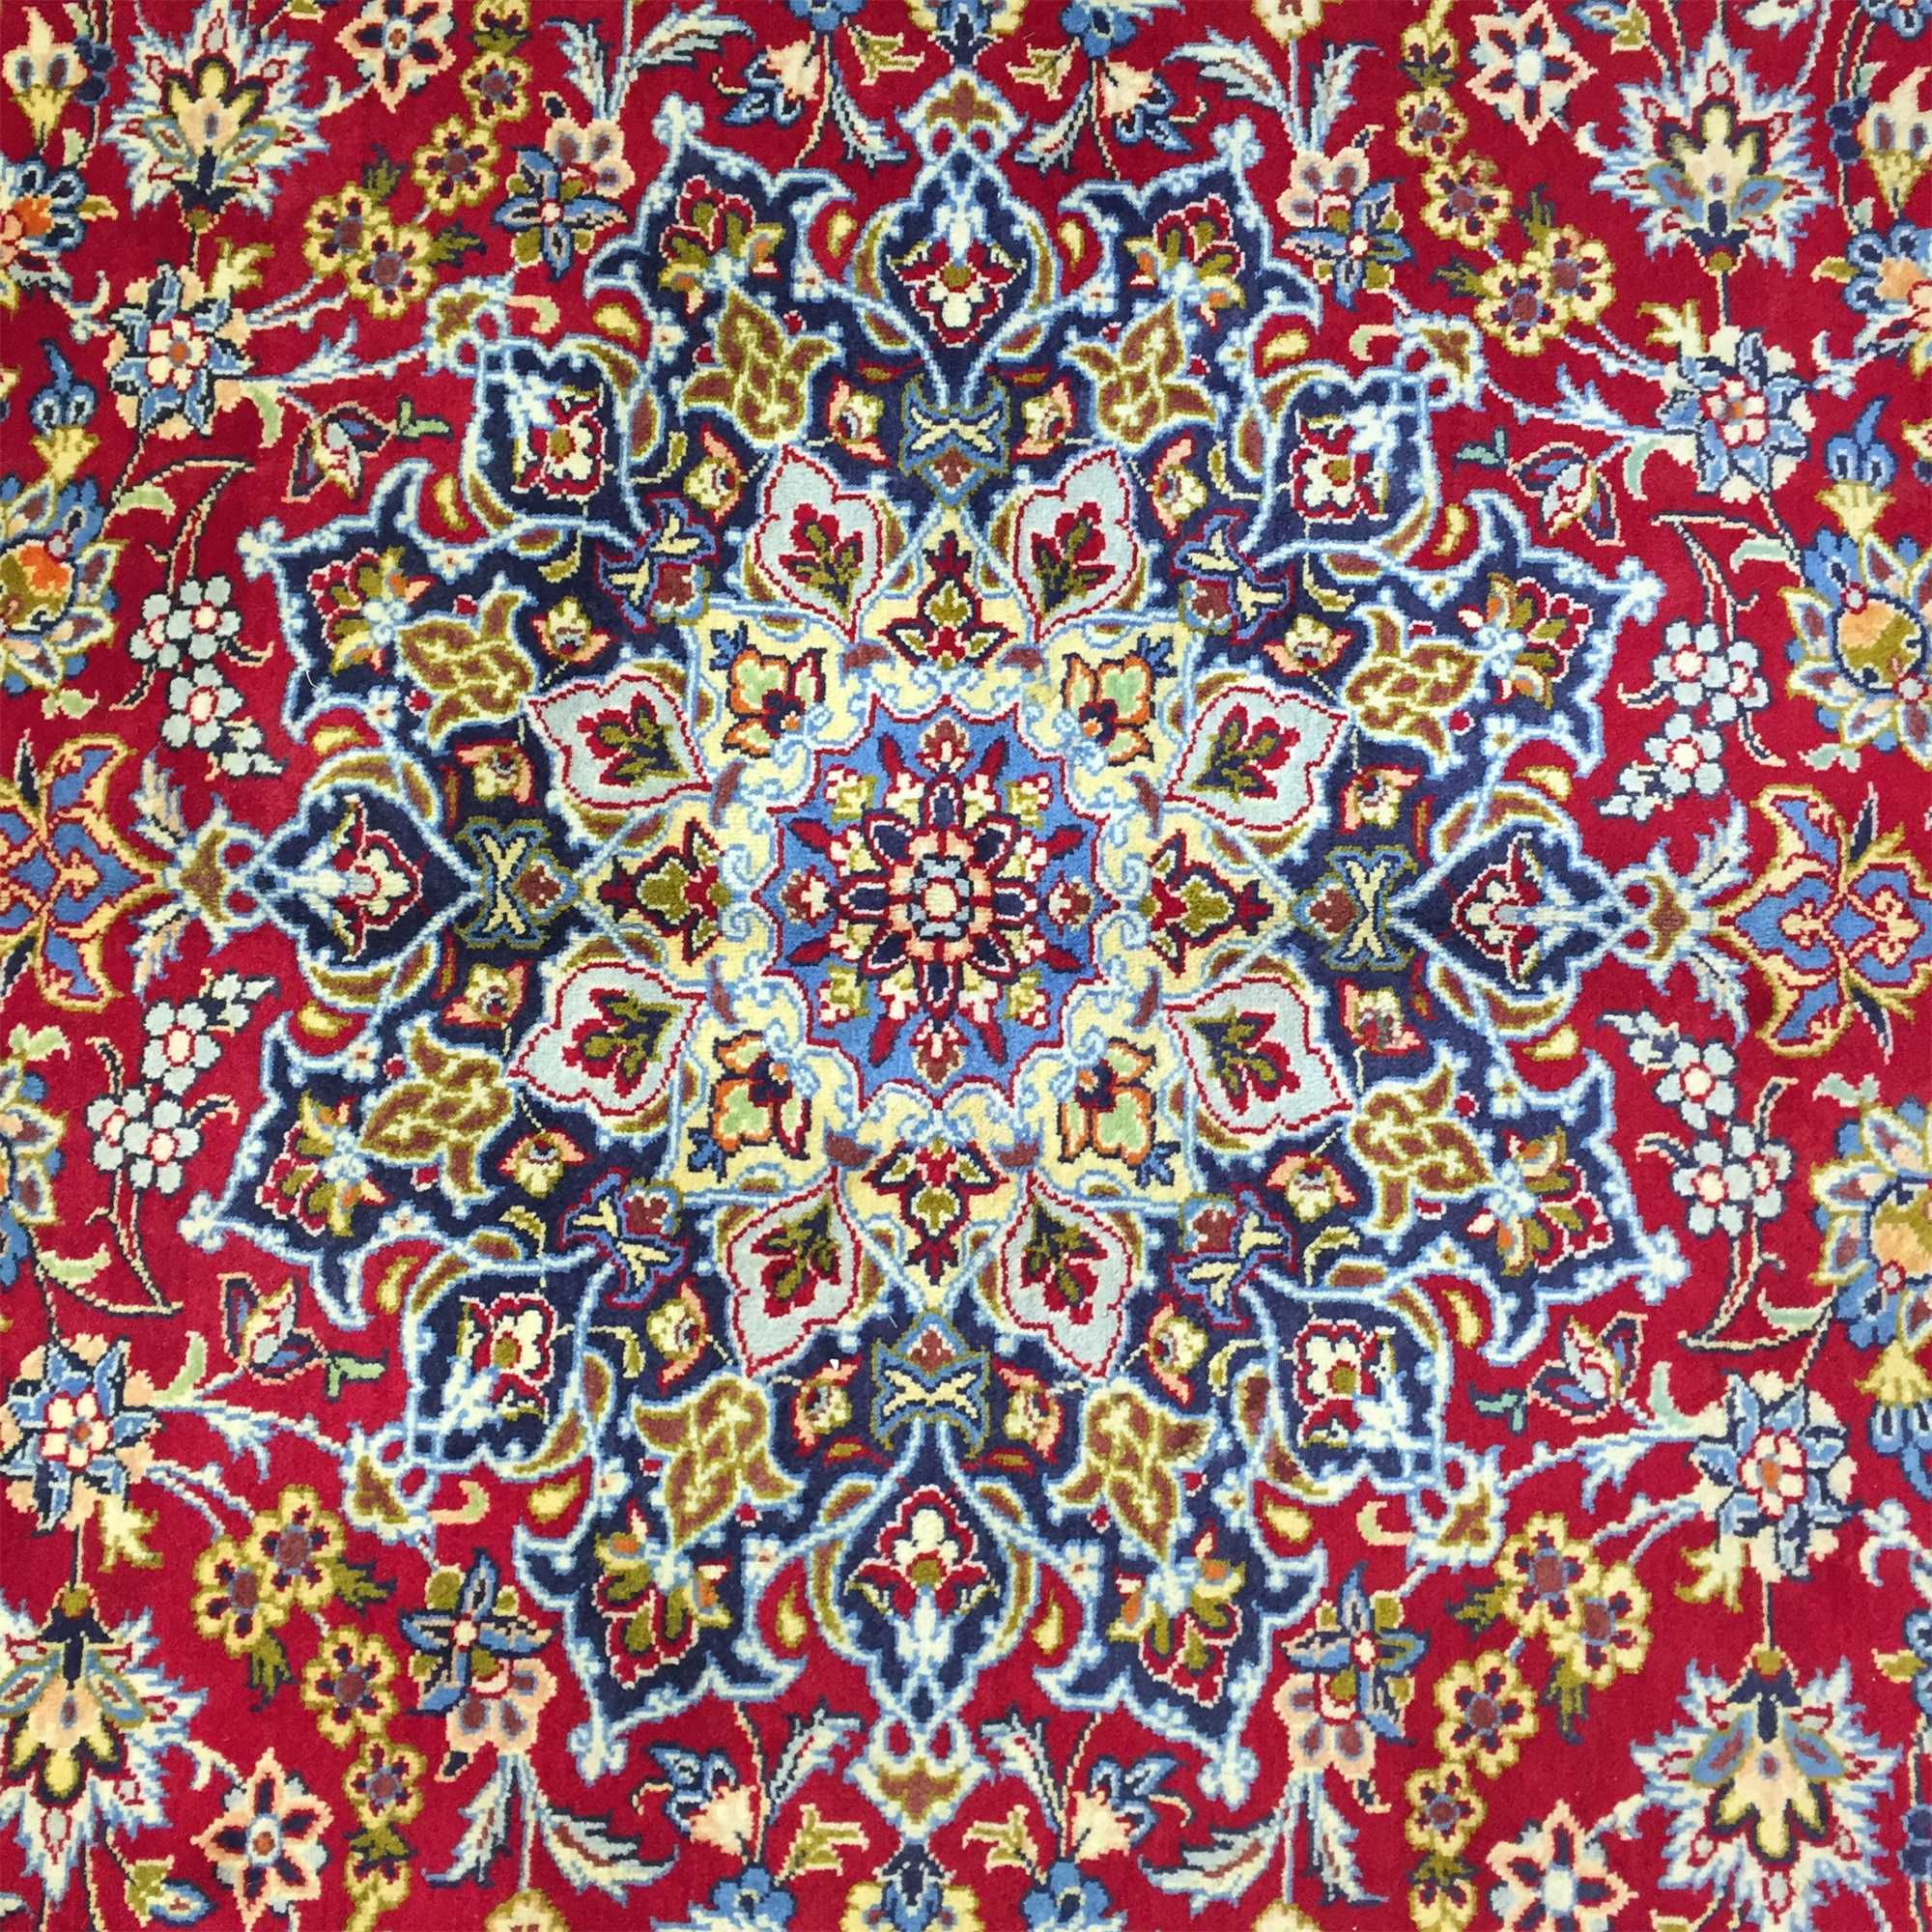 定制伊朗手工编织羊毛地毯欧式美式田园风格客厅卧室床边地毯颜色以